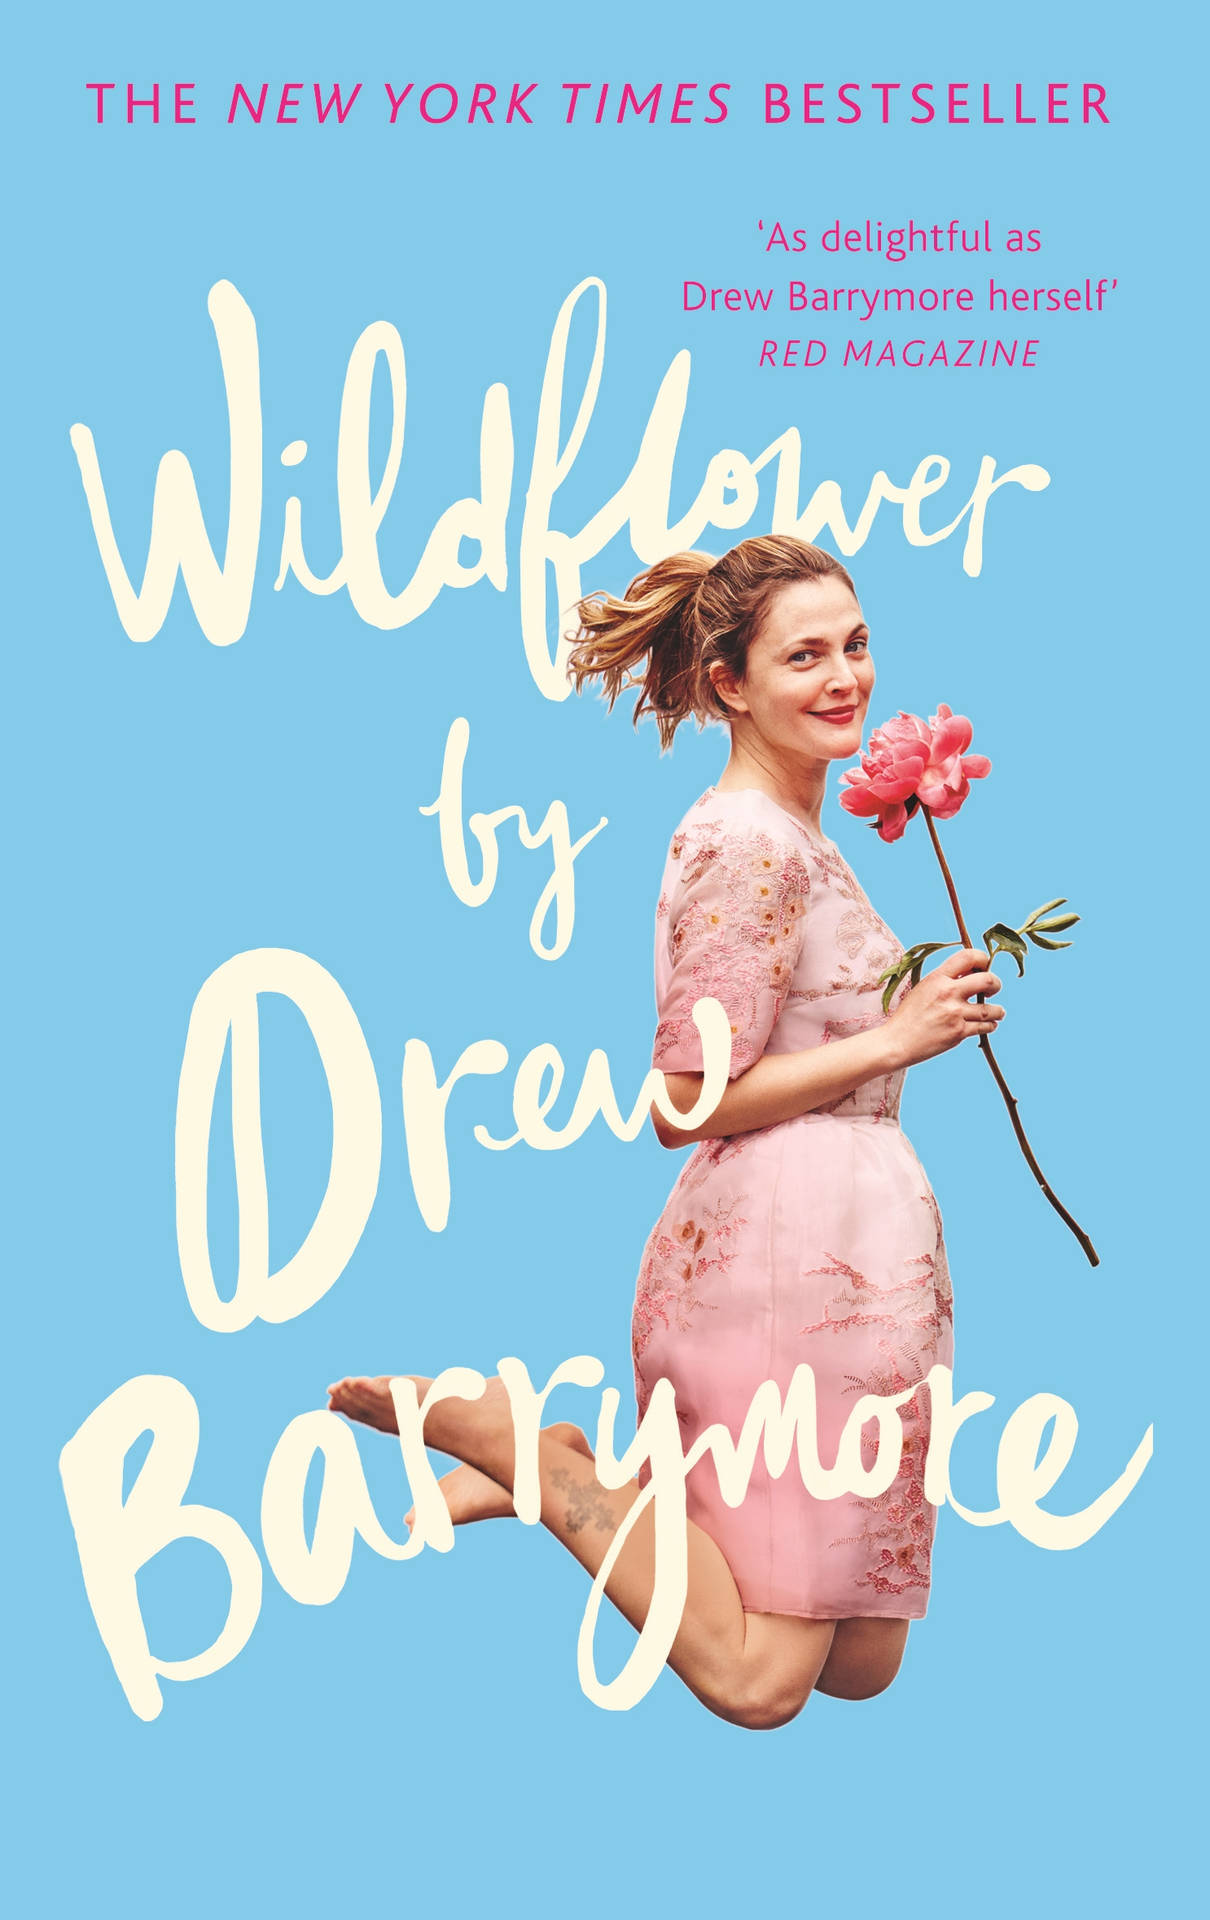 Wildblumenbuchvon Drew Barrymore Wallpaper